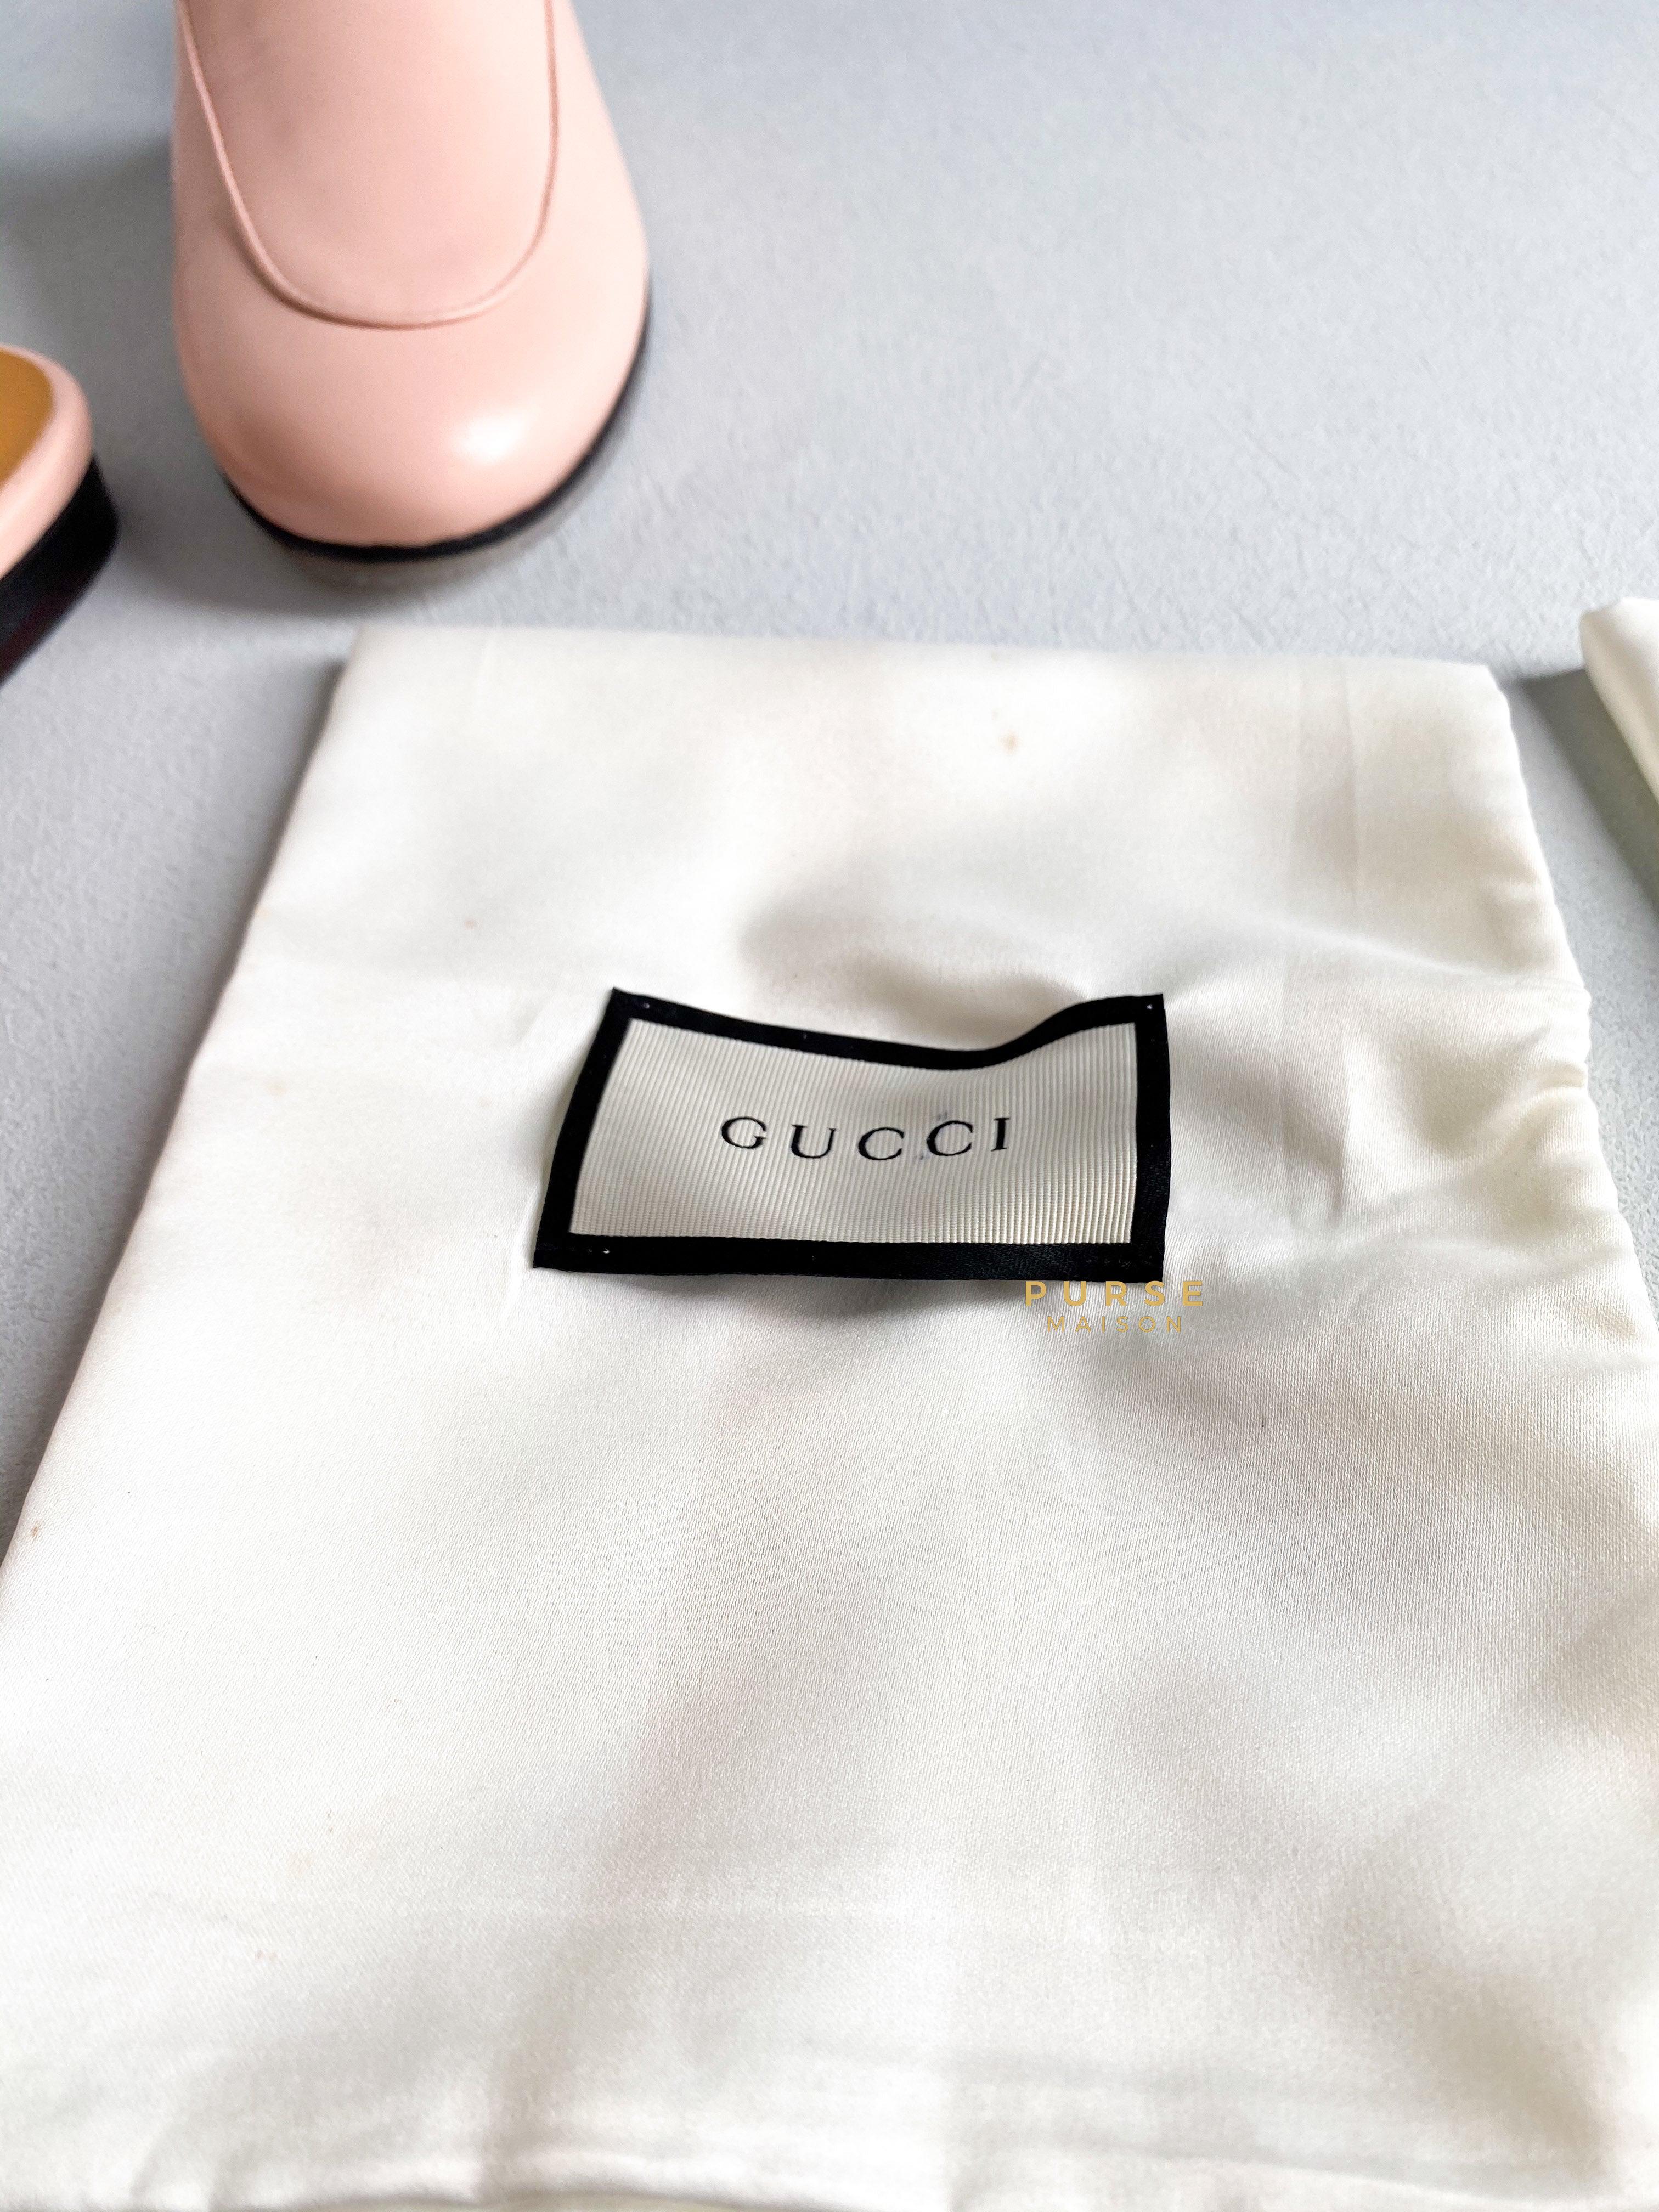 Gucci Princetown Horsebit Pink Mules Size 36 (24.5cm) | Purse Maison Luxury Bags Shop